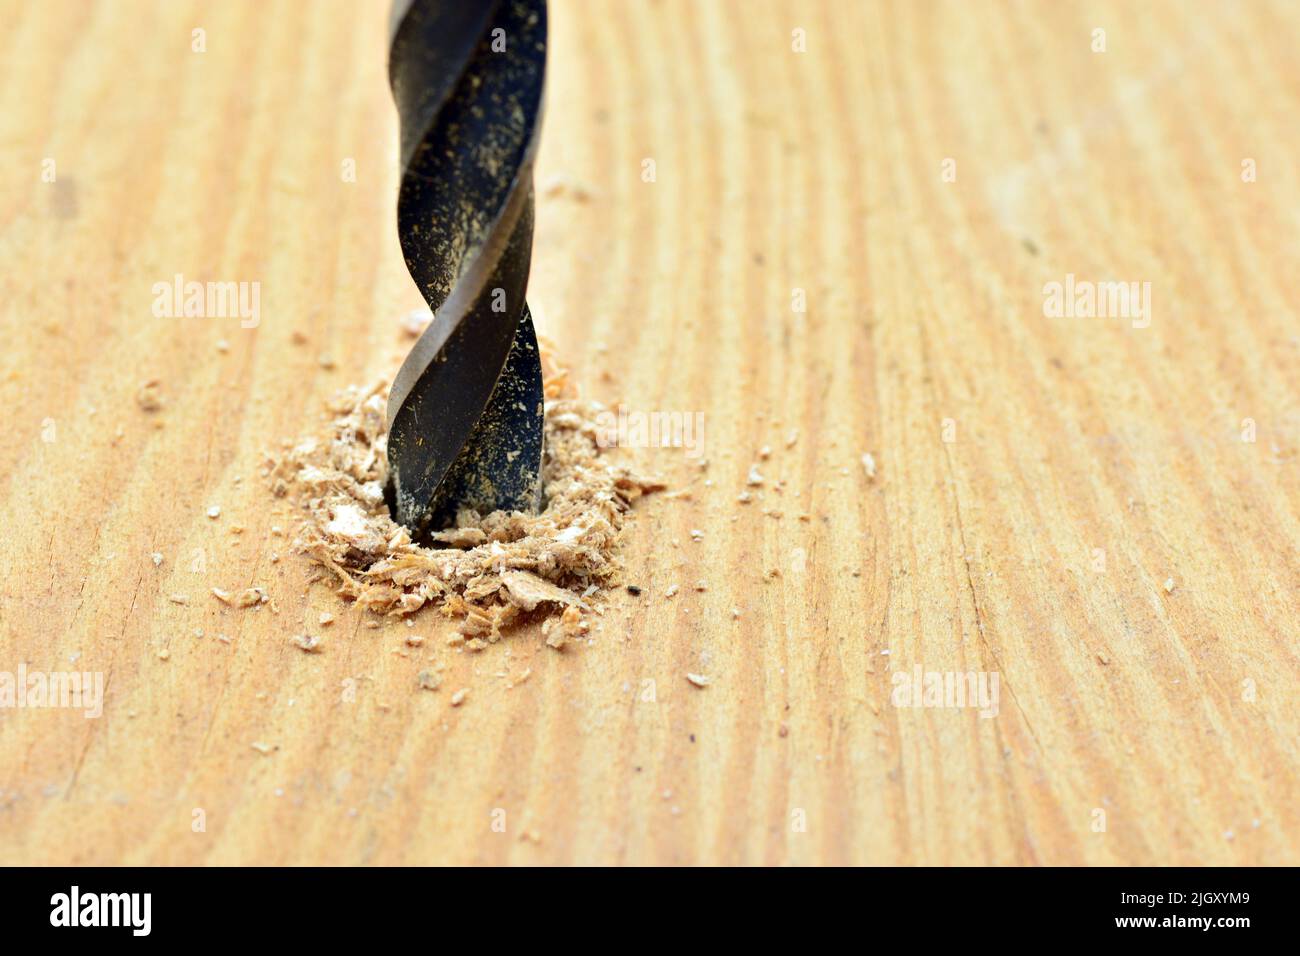 Detalle de una broca abriendo un agujero en una tabla de madera Foto Stock